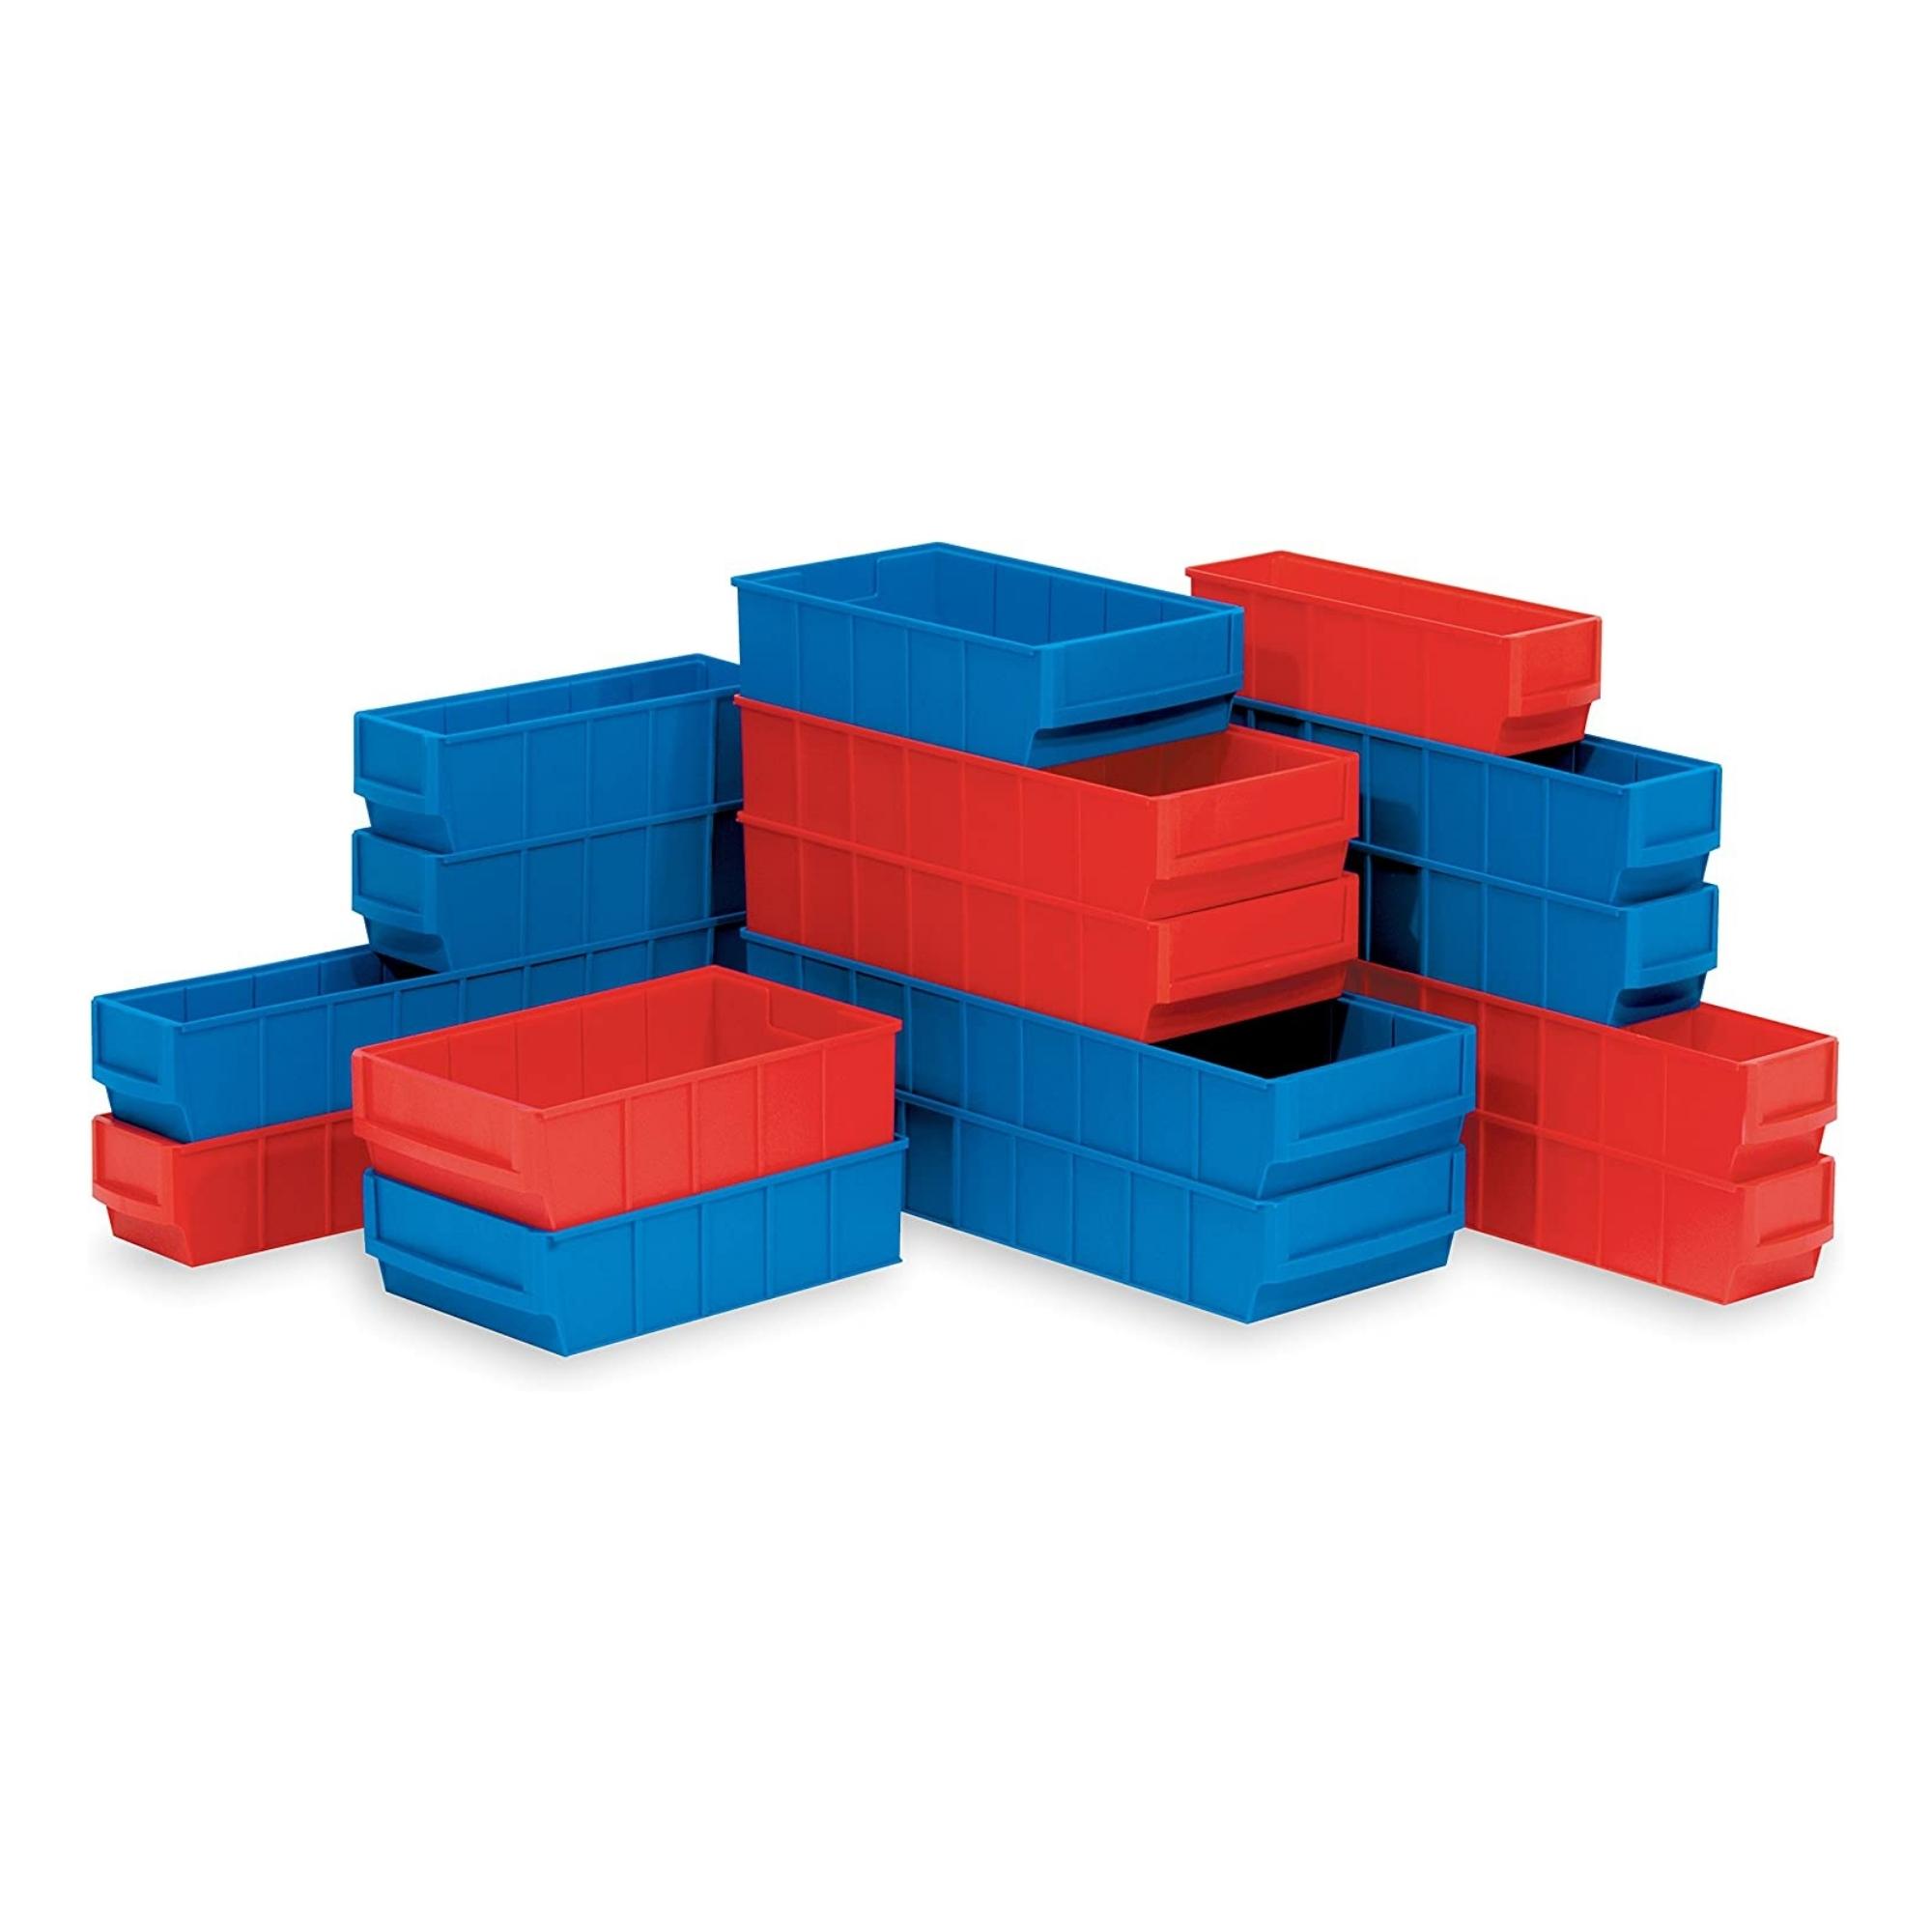 Rote Industriebox 500 B | HxBxT 8,1x18,3x50cm | 6 Liter| Sichtlagerkasten, Sortimentskasten, Sortimentsbox, Kleinteilebox